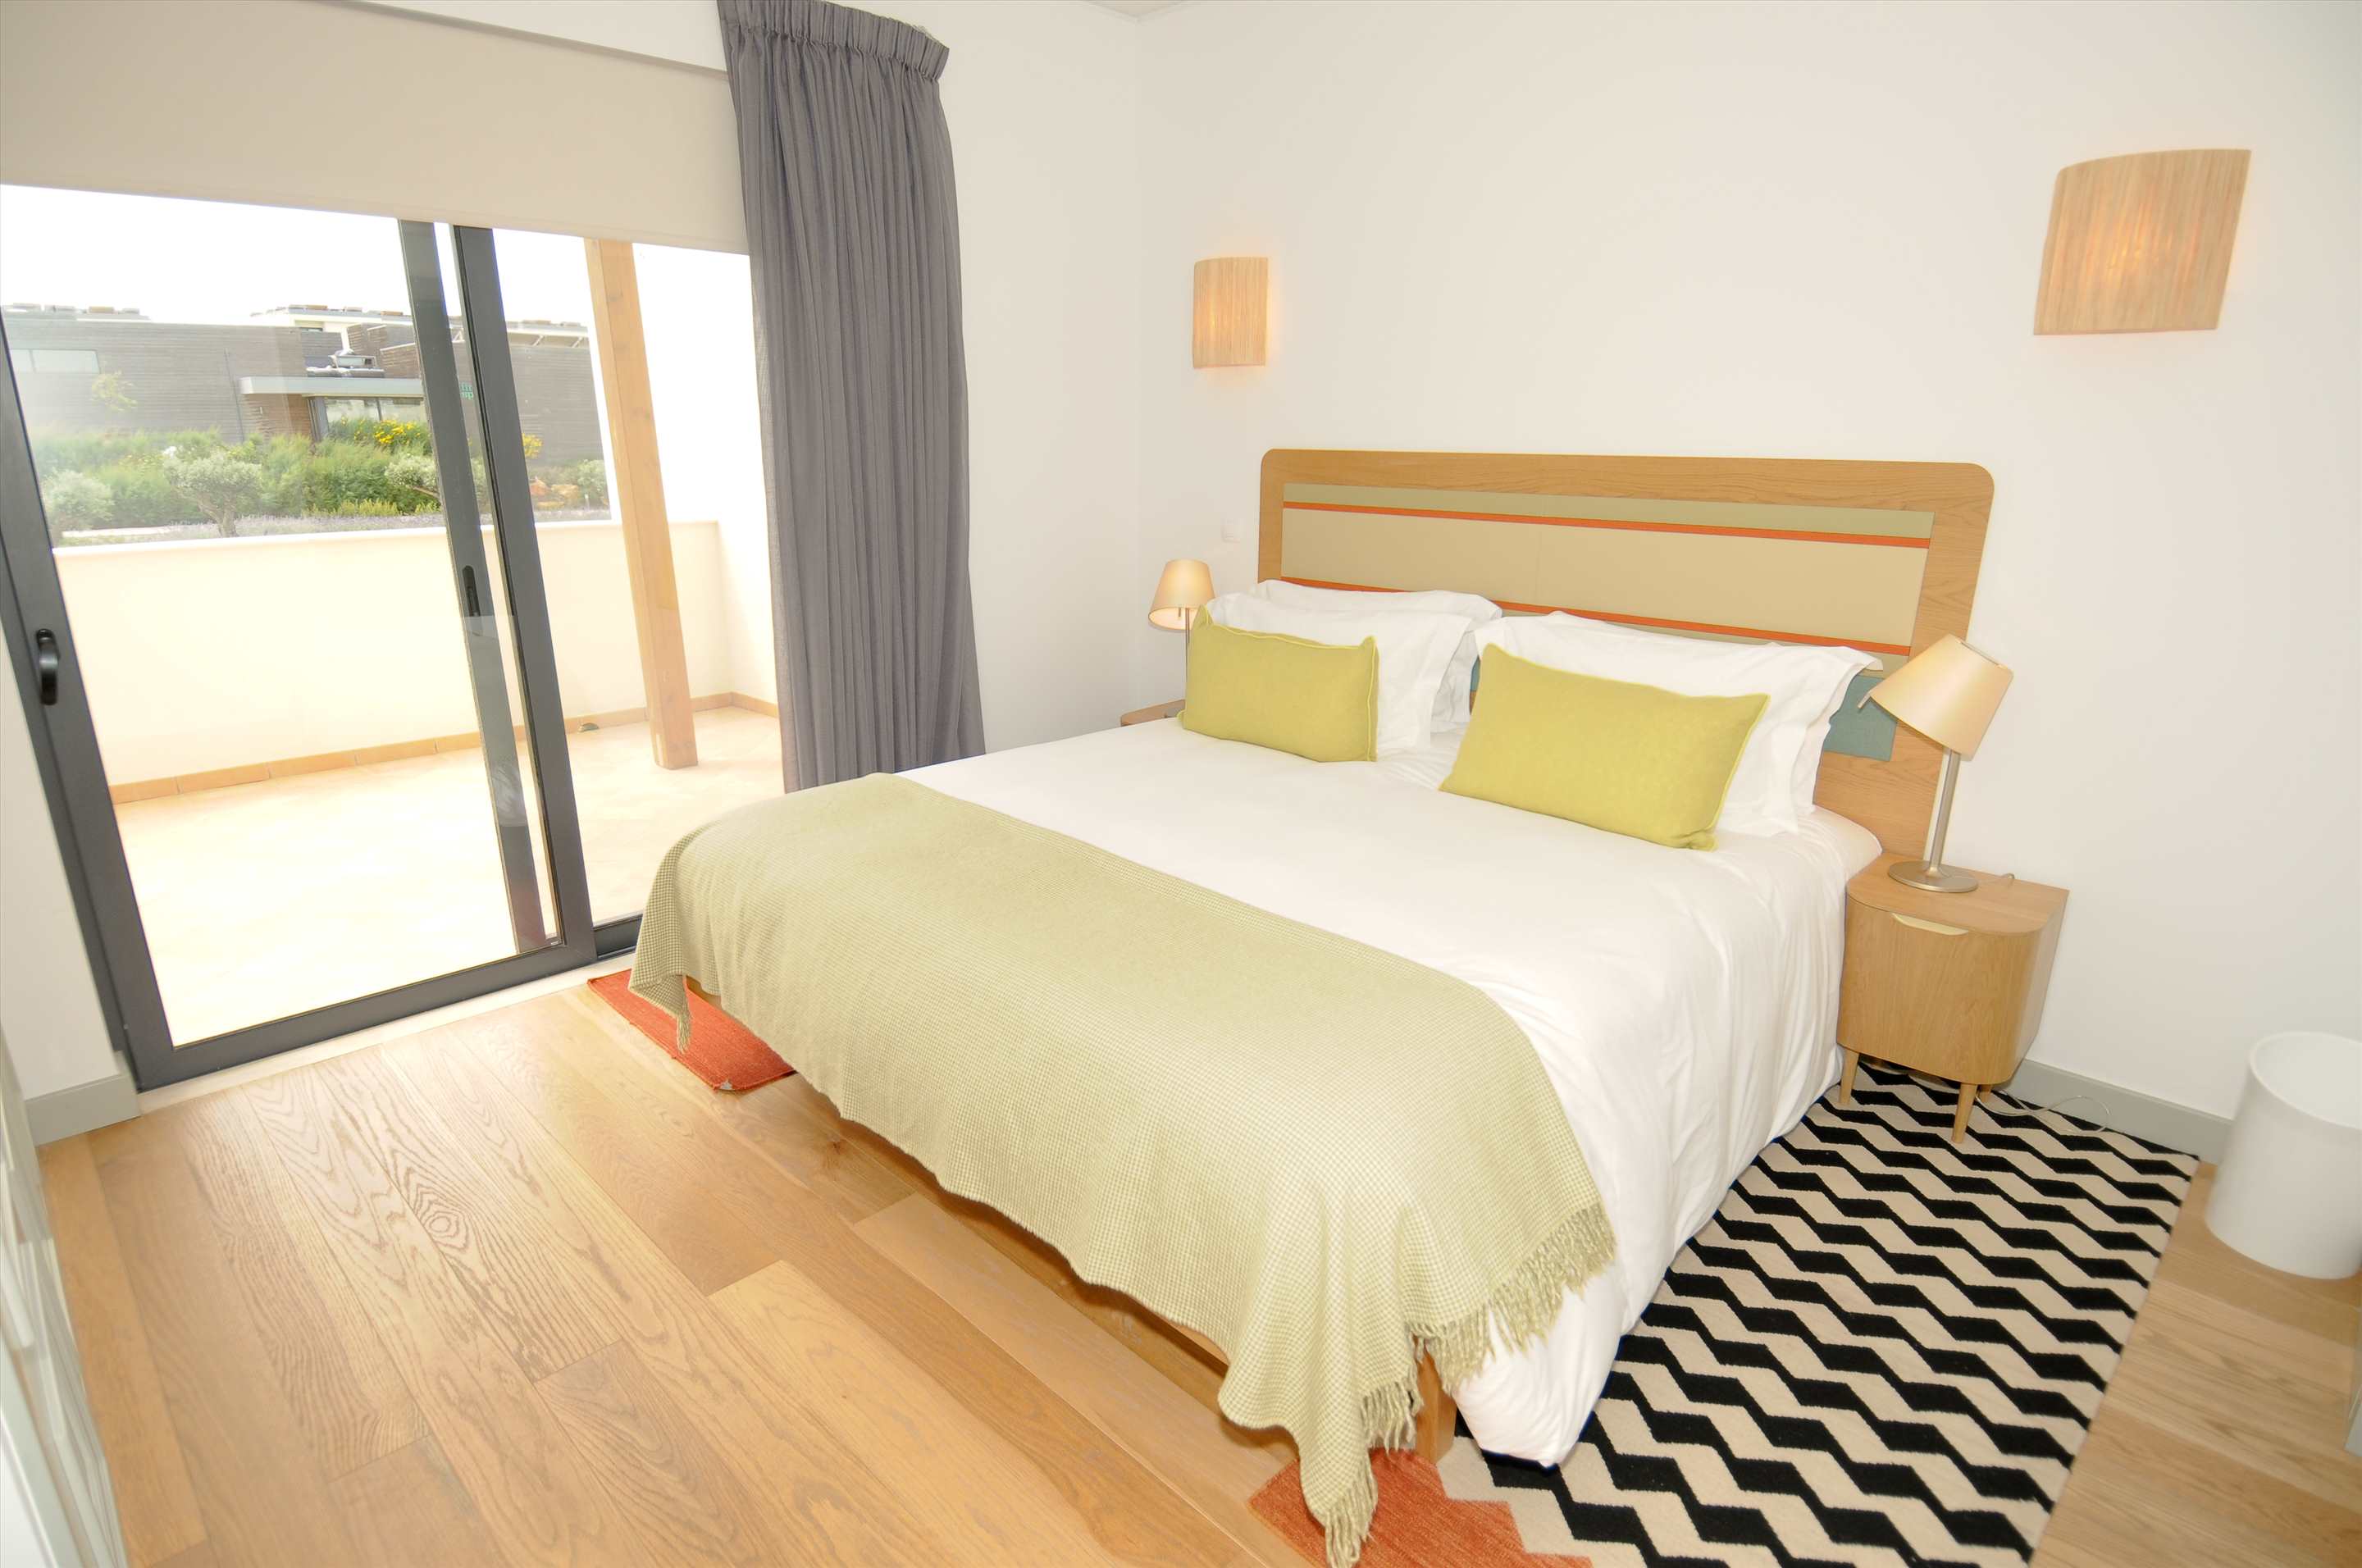 Martinhal Village Garden House, One Bedroom plus Bunk Bed, 1 bedroom villa in Martinhal Sagres, Algarve Photo #6